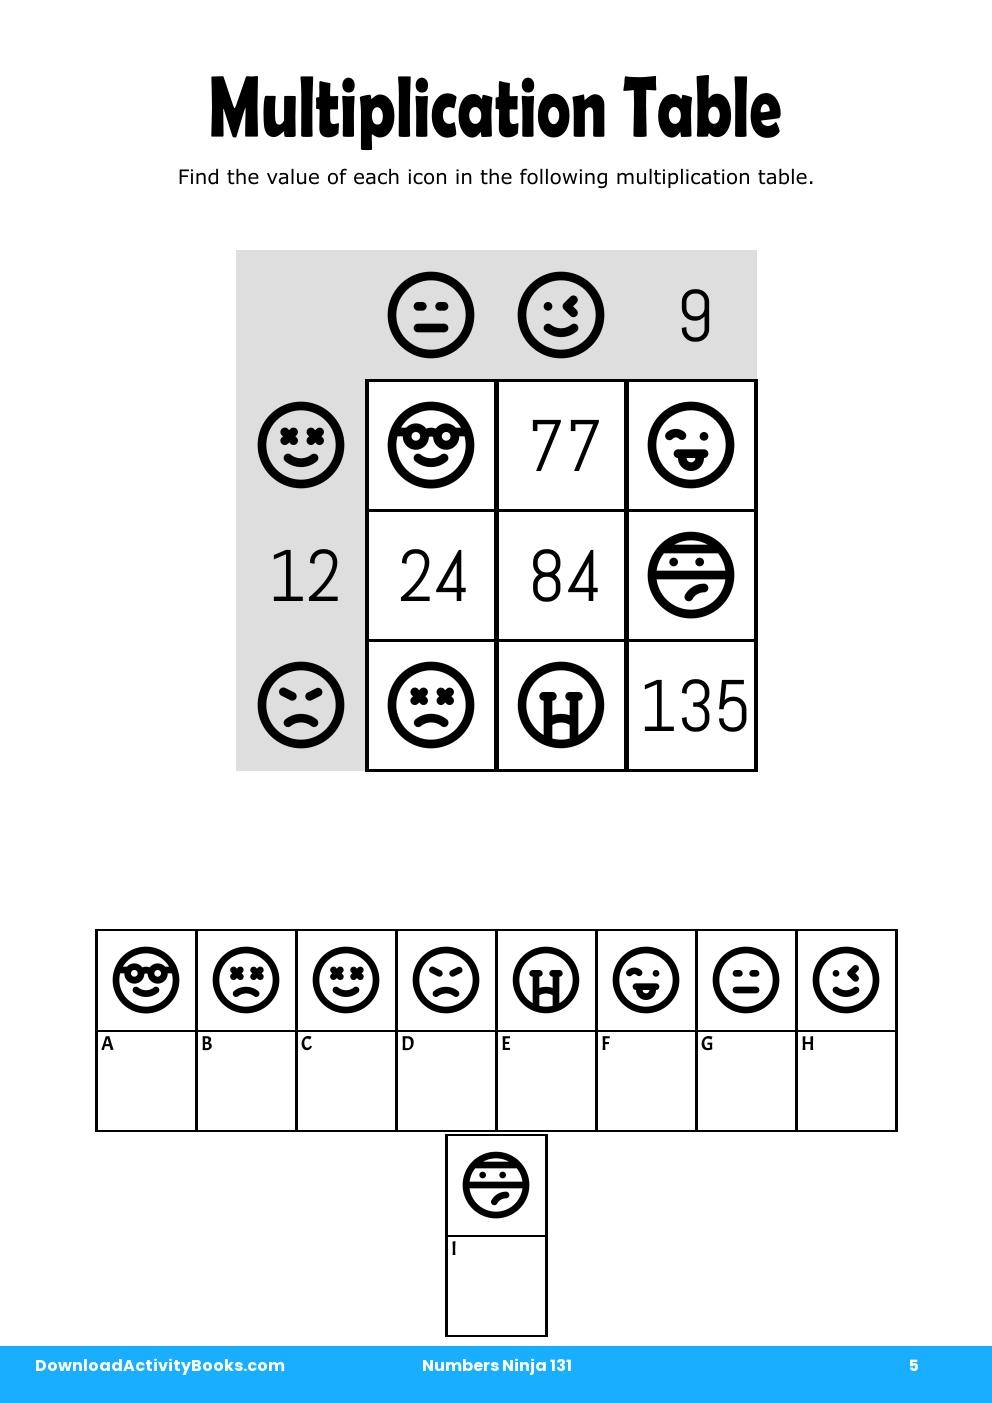 Multiplication Table in Numbers Ninja 131